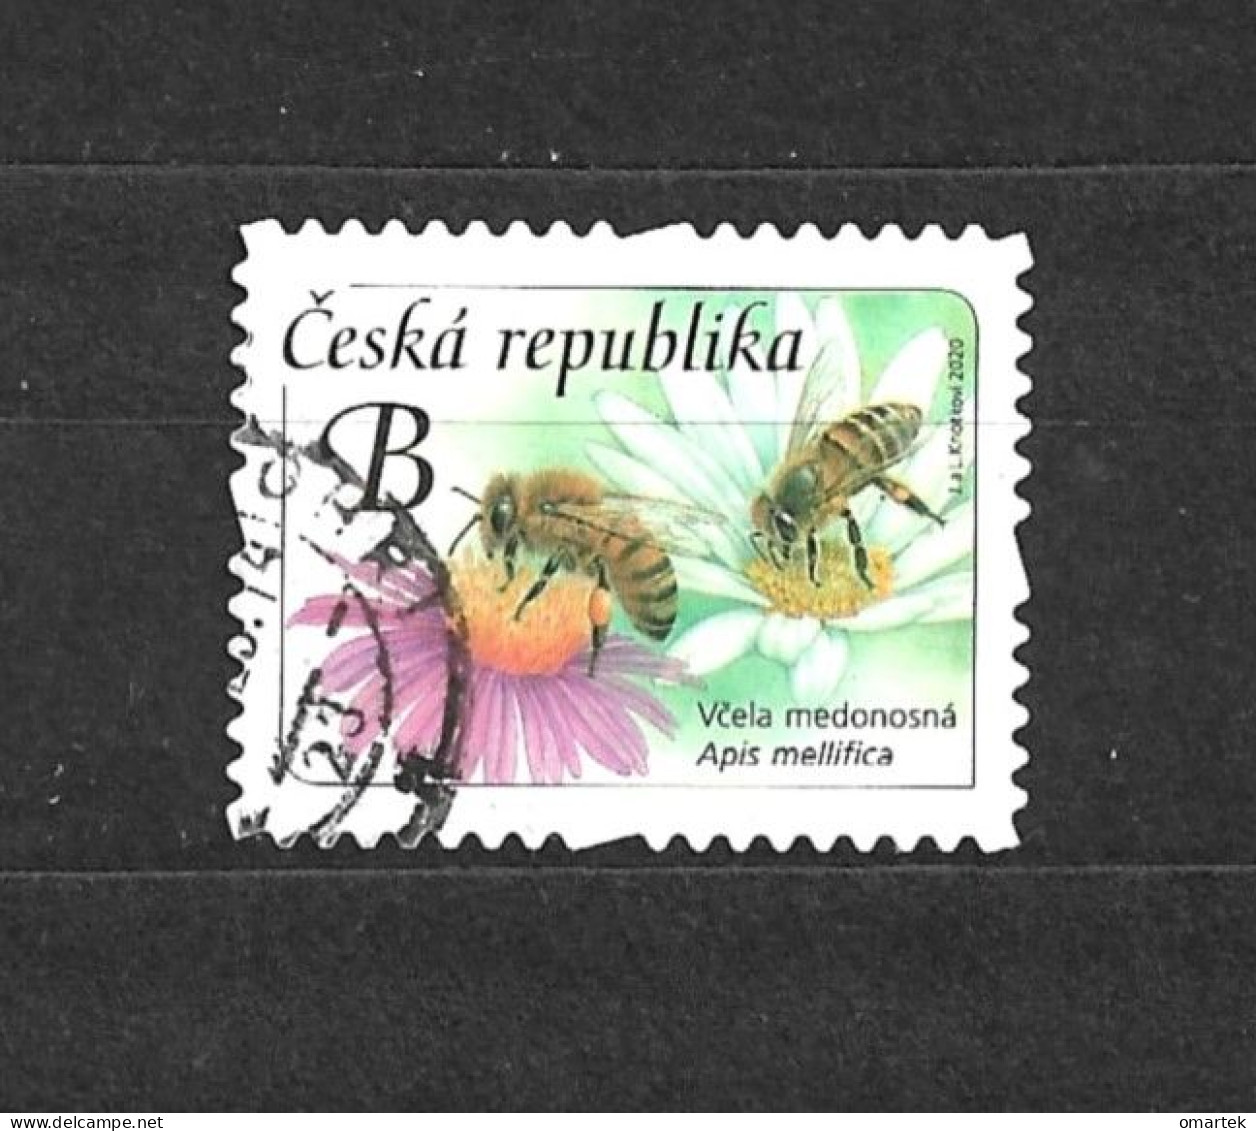 Czech Republic 2020 ⊙ Mi 1067 Sc 3824 Yt 943 Honey Bee. Tschechische Republik. C13 - Oblitérés